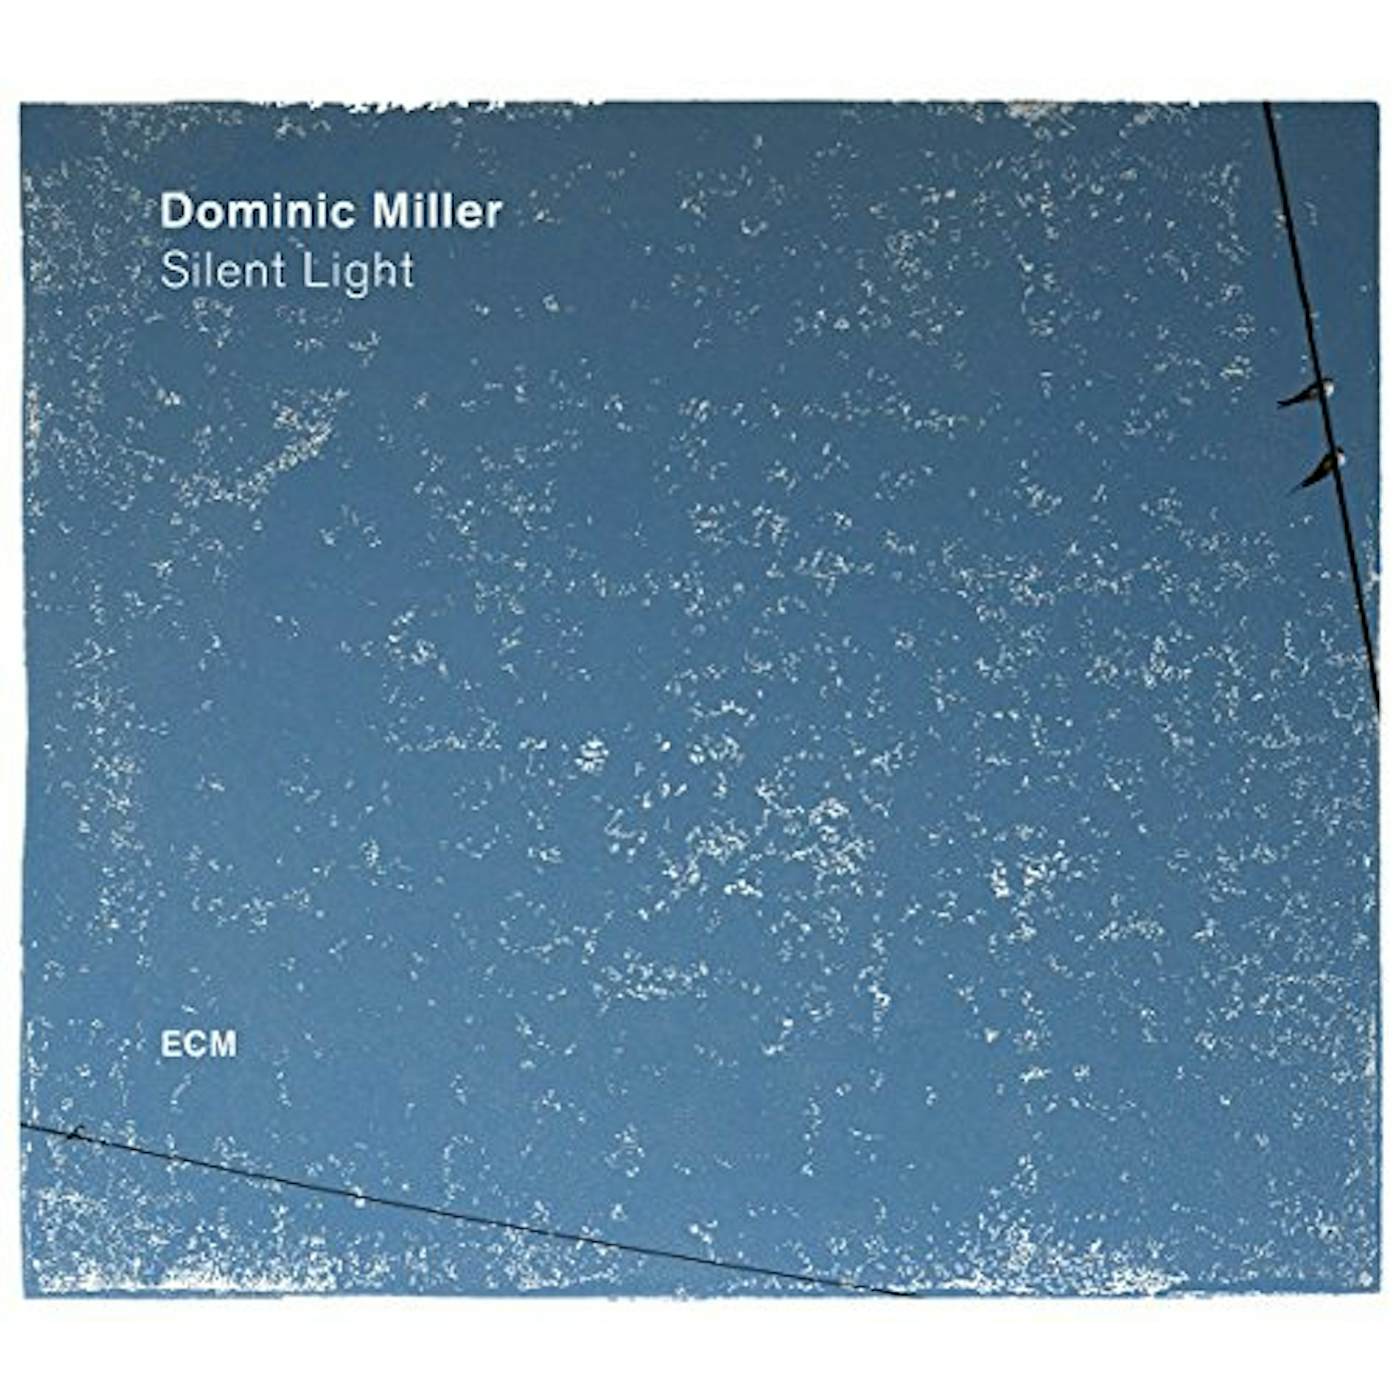 Dominic Miller Silent Light Vinyl Record